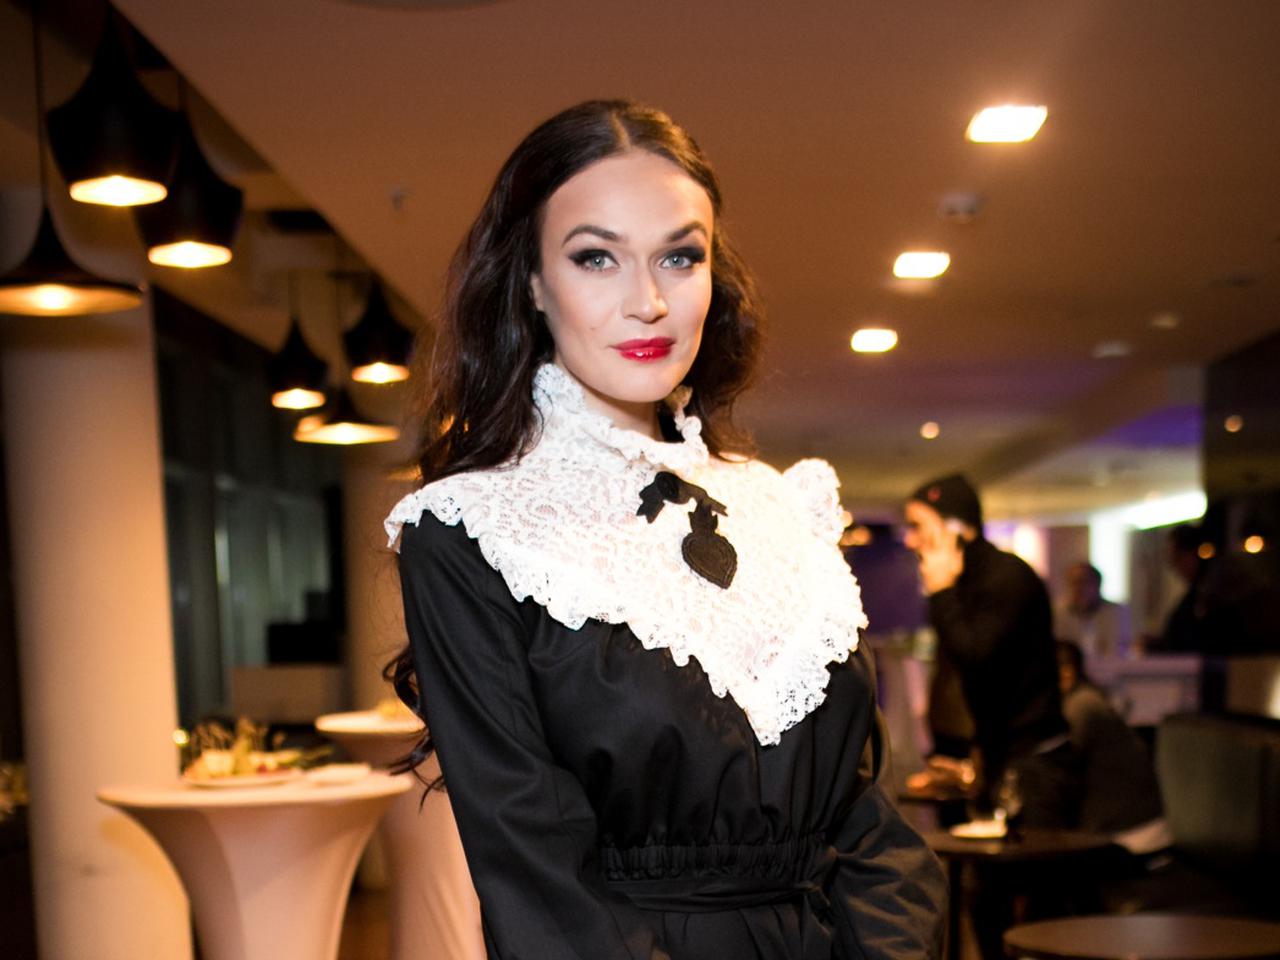 Водонаева пришла на премьеру «Zомбоящика» в «бабушкином» платье, а Согдиана  – в блестящем плаще на грани фола | WMJ.ru